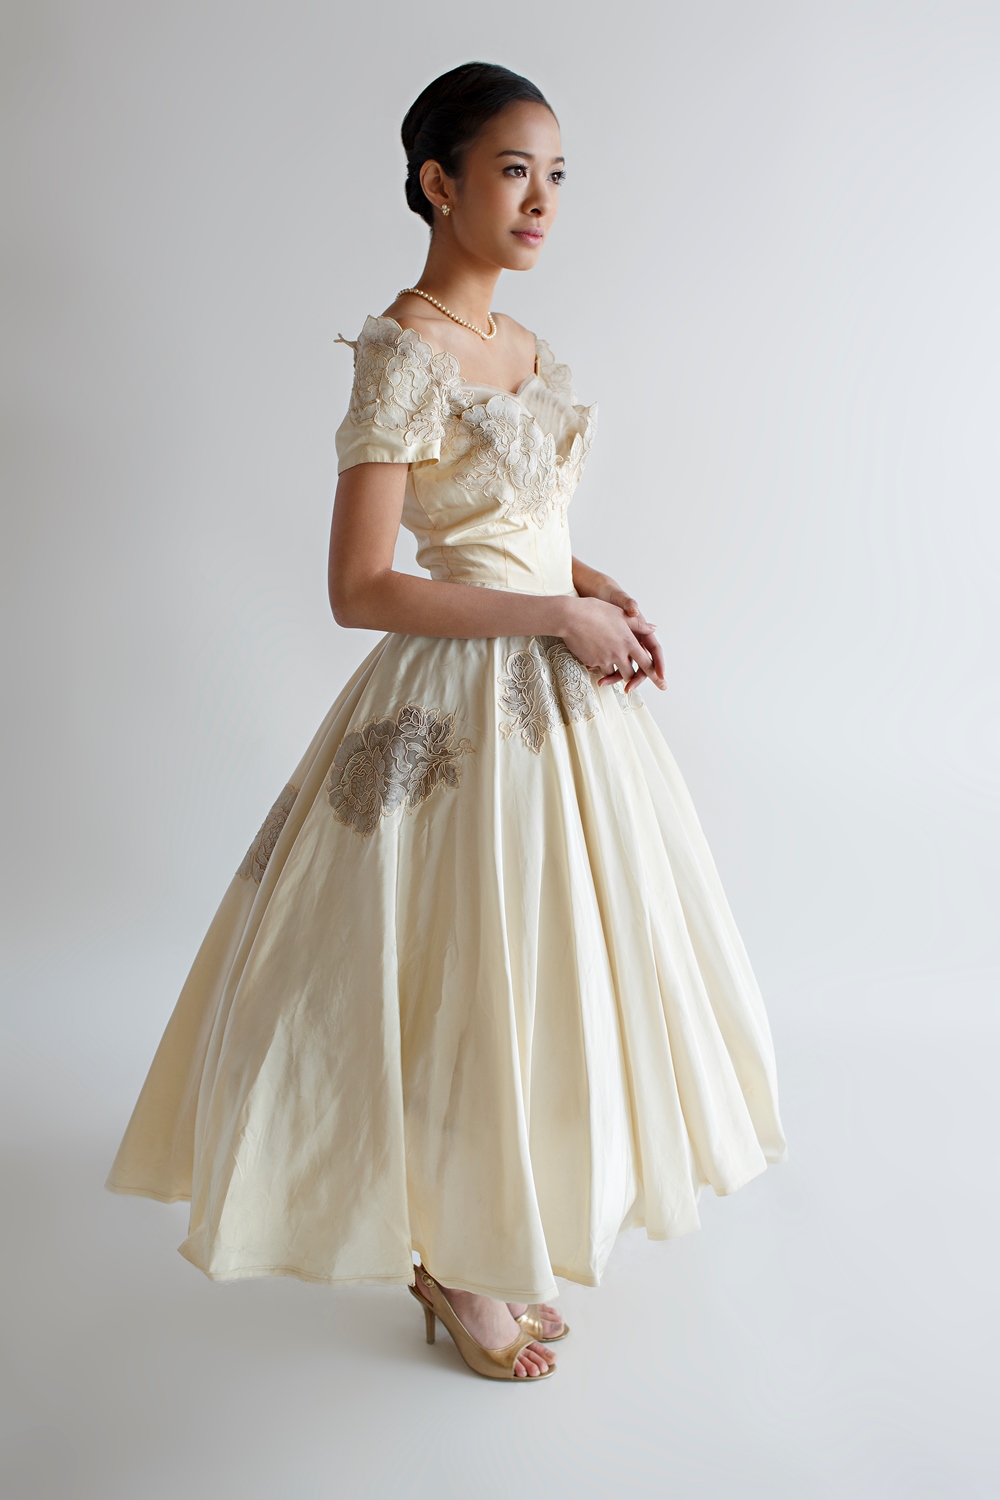 Beloved Vintage Bridal - Vintage 1950s Tea Length Wedding Dress